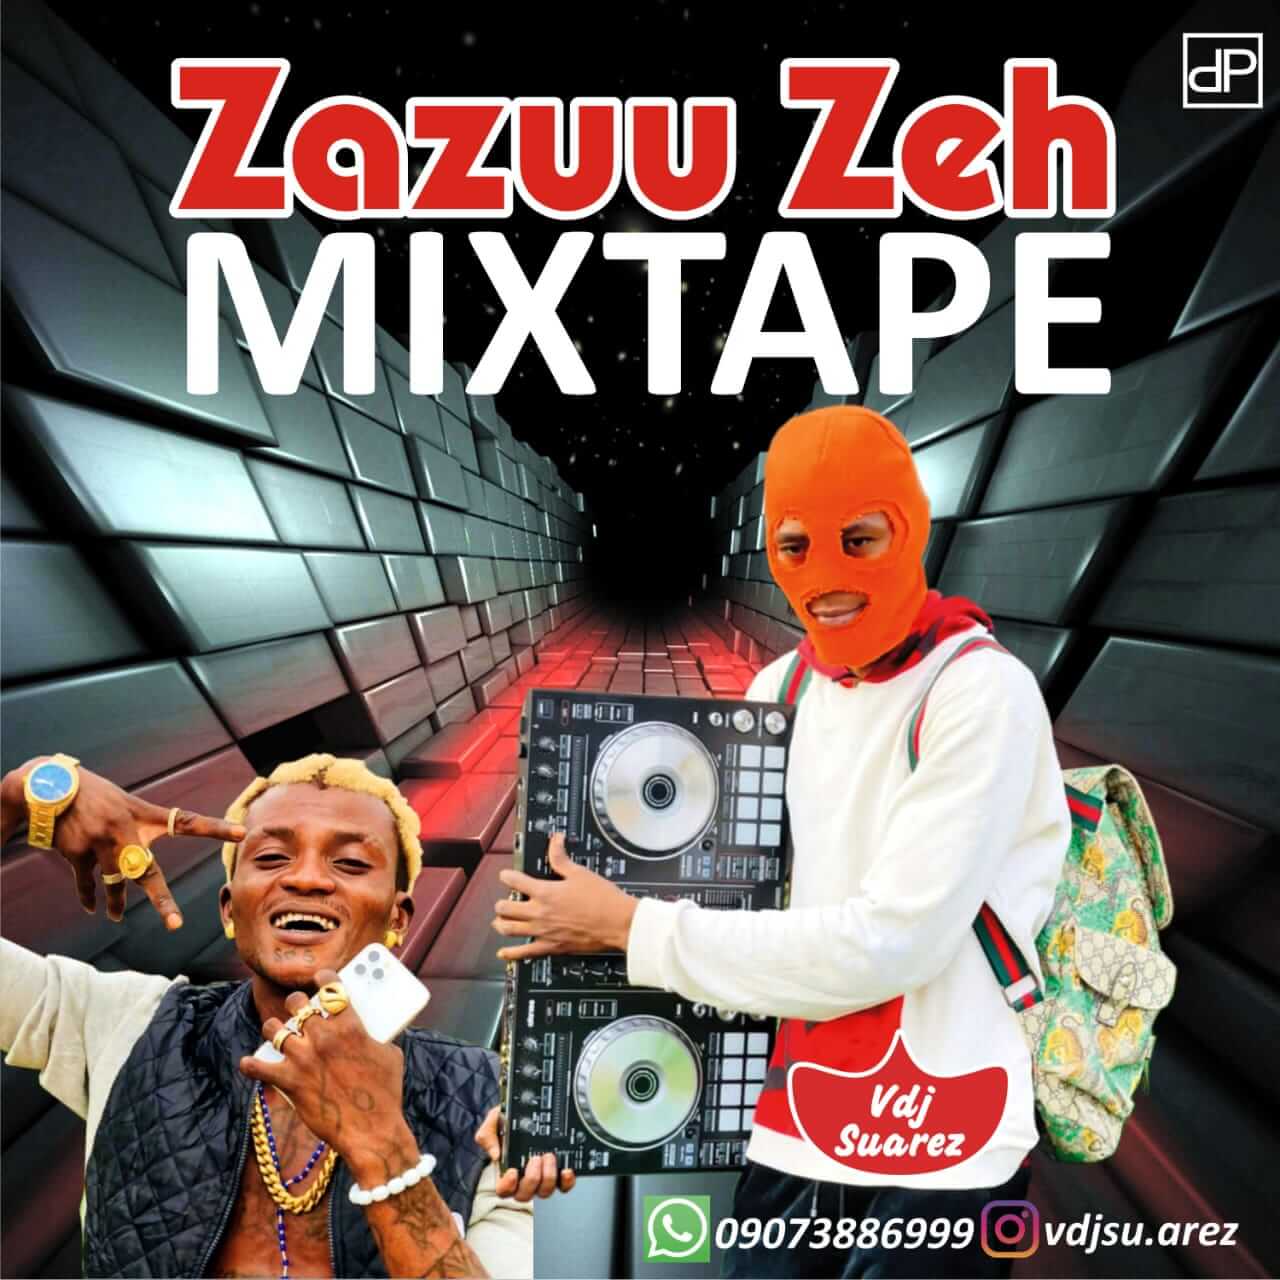 [Mixtape] Vdj Suarez - Zazuu Mix